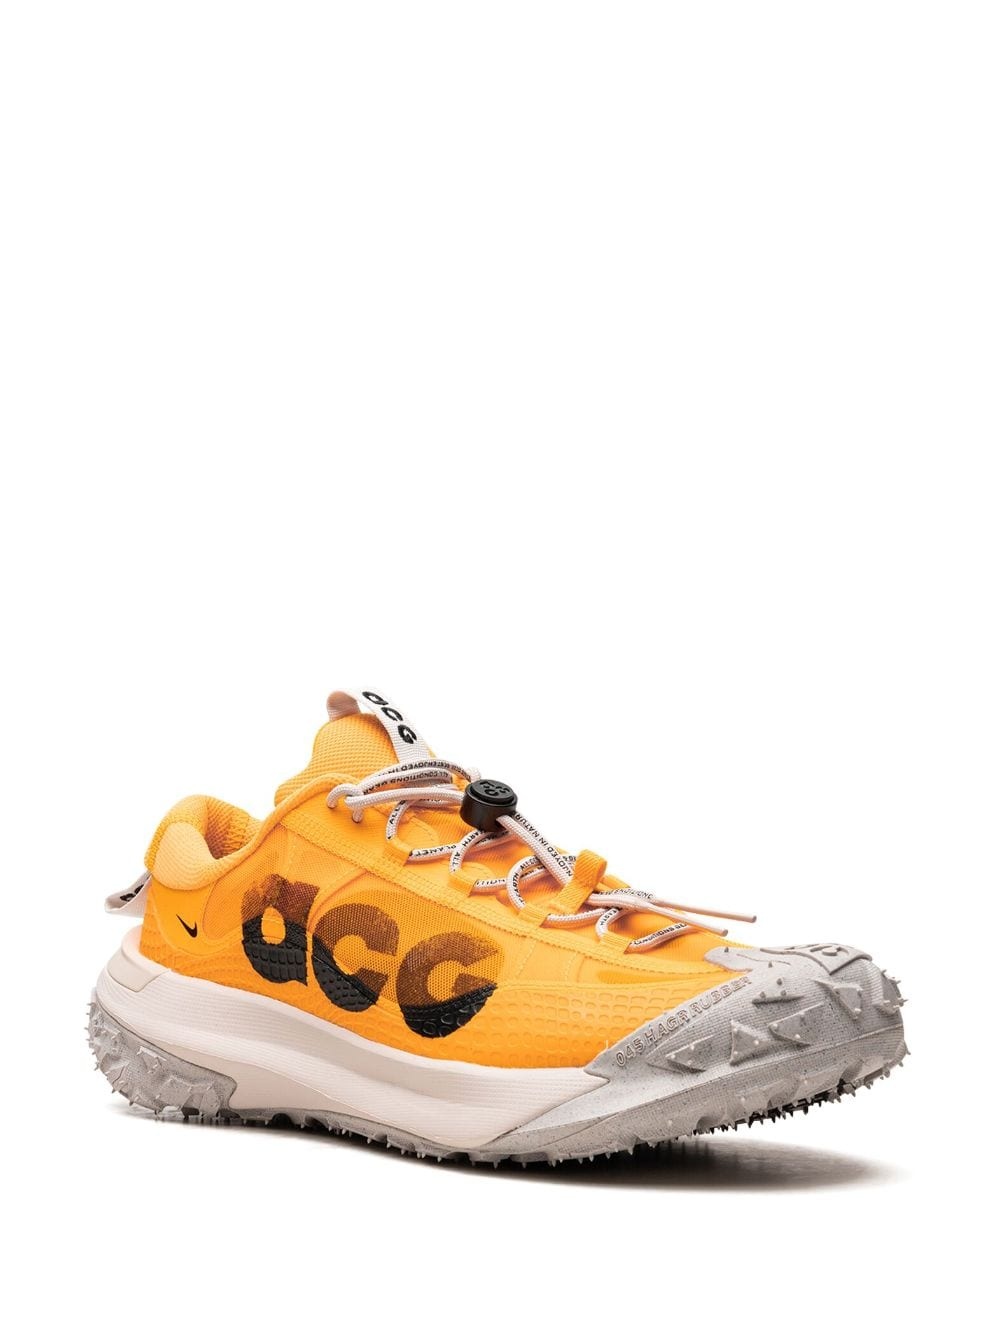 ACG Mountain Fly Low 2 "Laser Orange" sneakers - 2